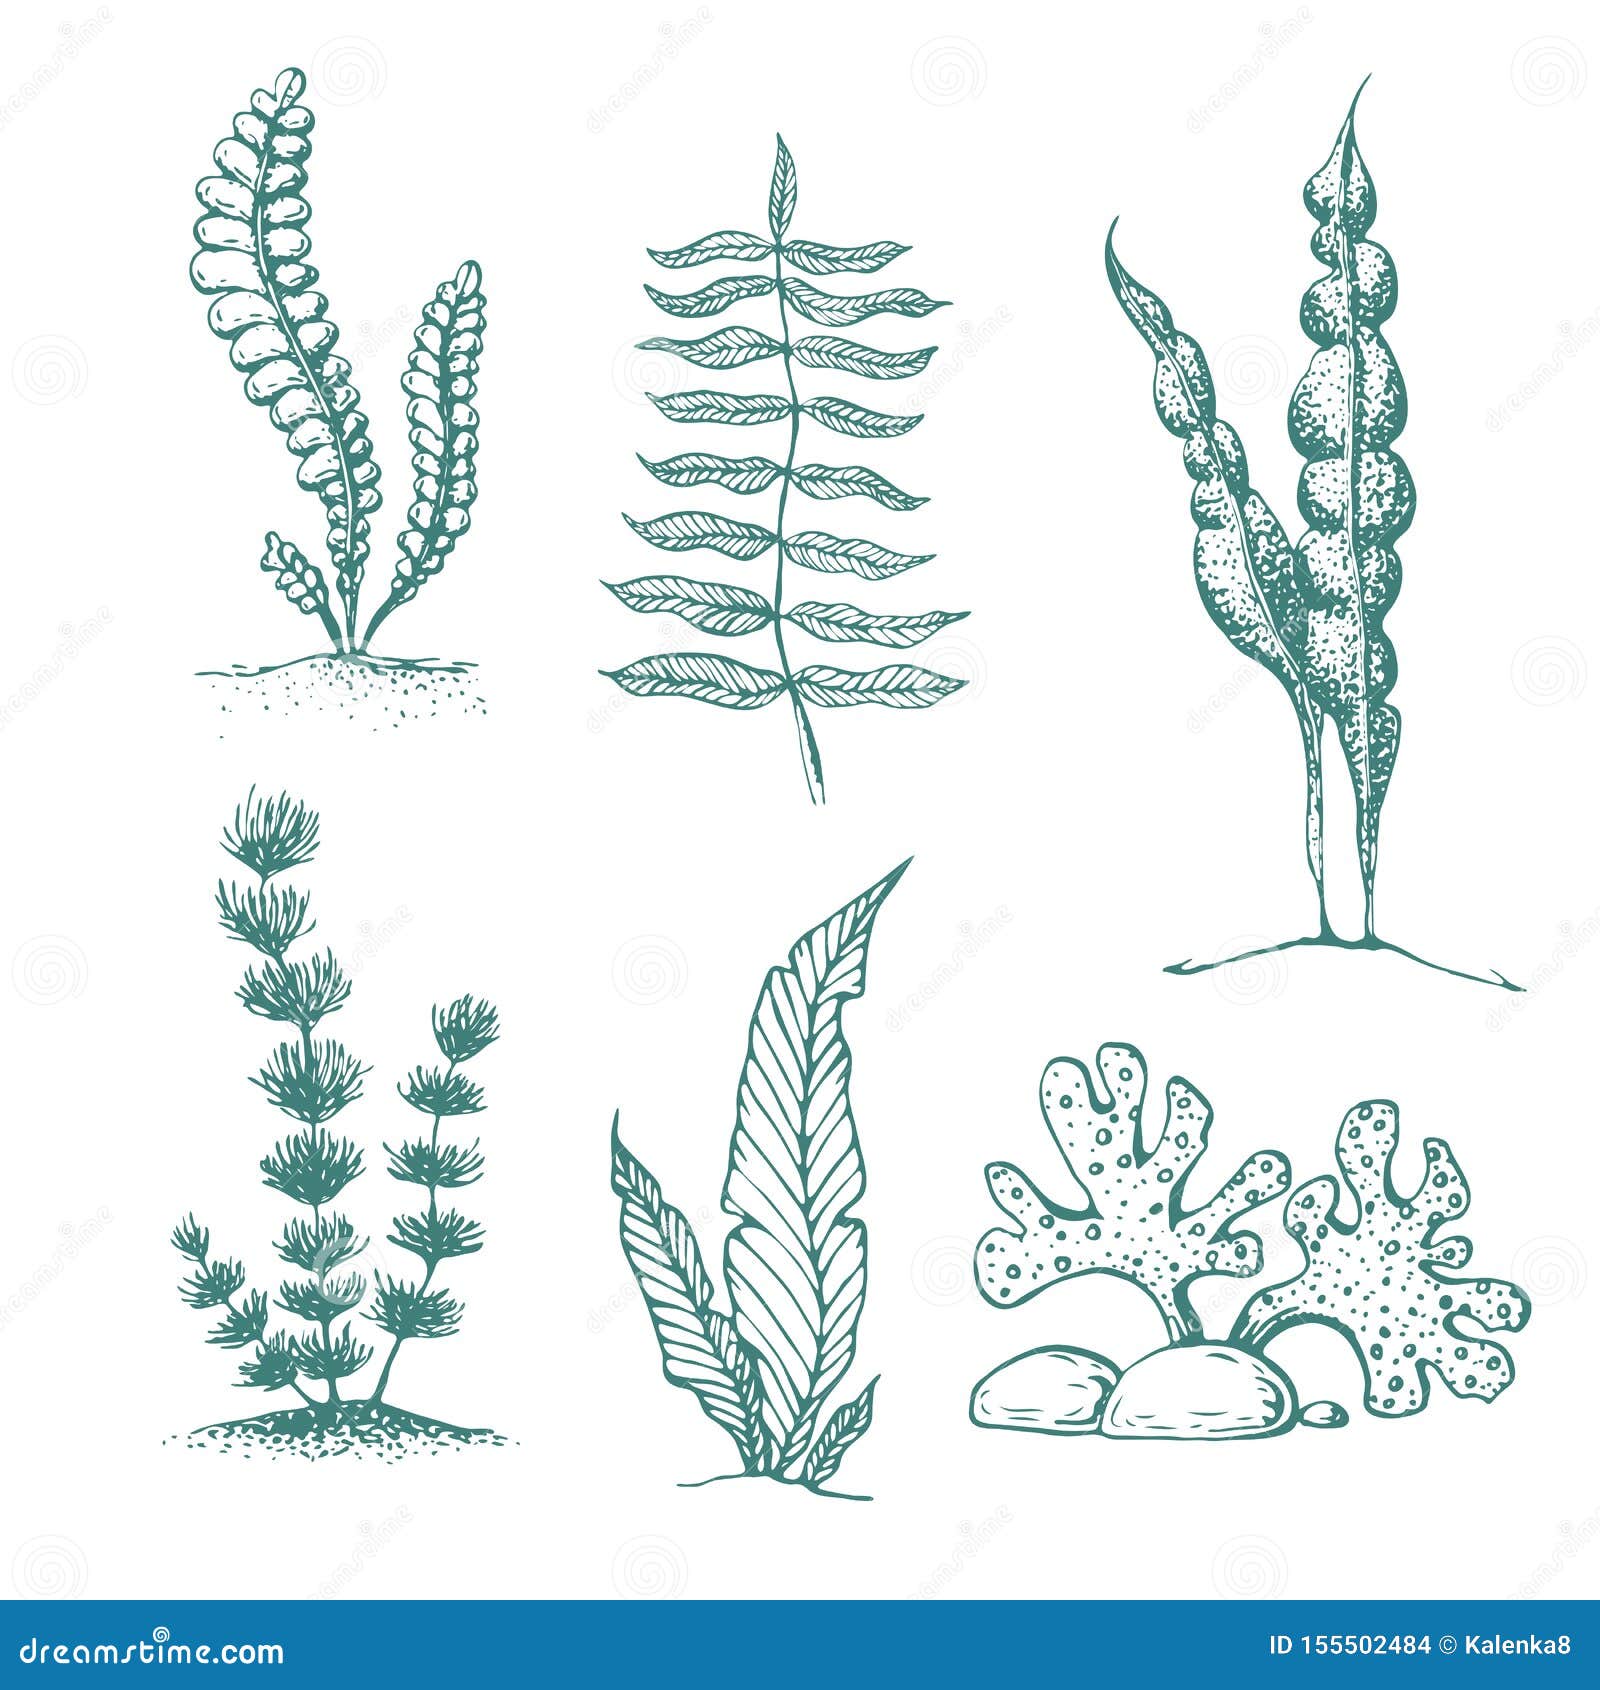 https://thumbs.dreamstime.com/z/ink-hand-drawn-seaweed-collection-various-underwater-sea-plants-algae-vintage-vector-engraved-marine-sketch-silhouettes-155502484.jpg